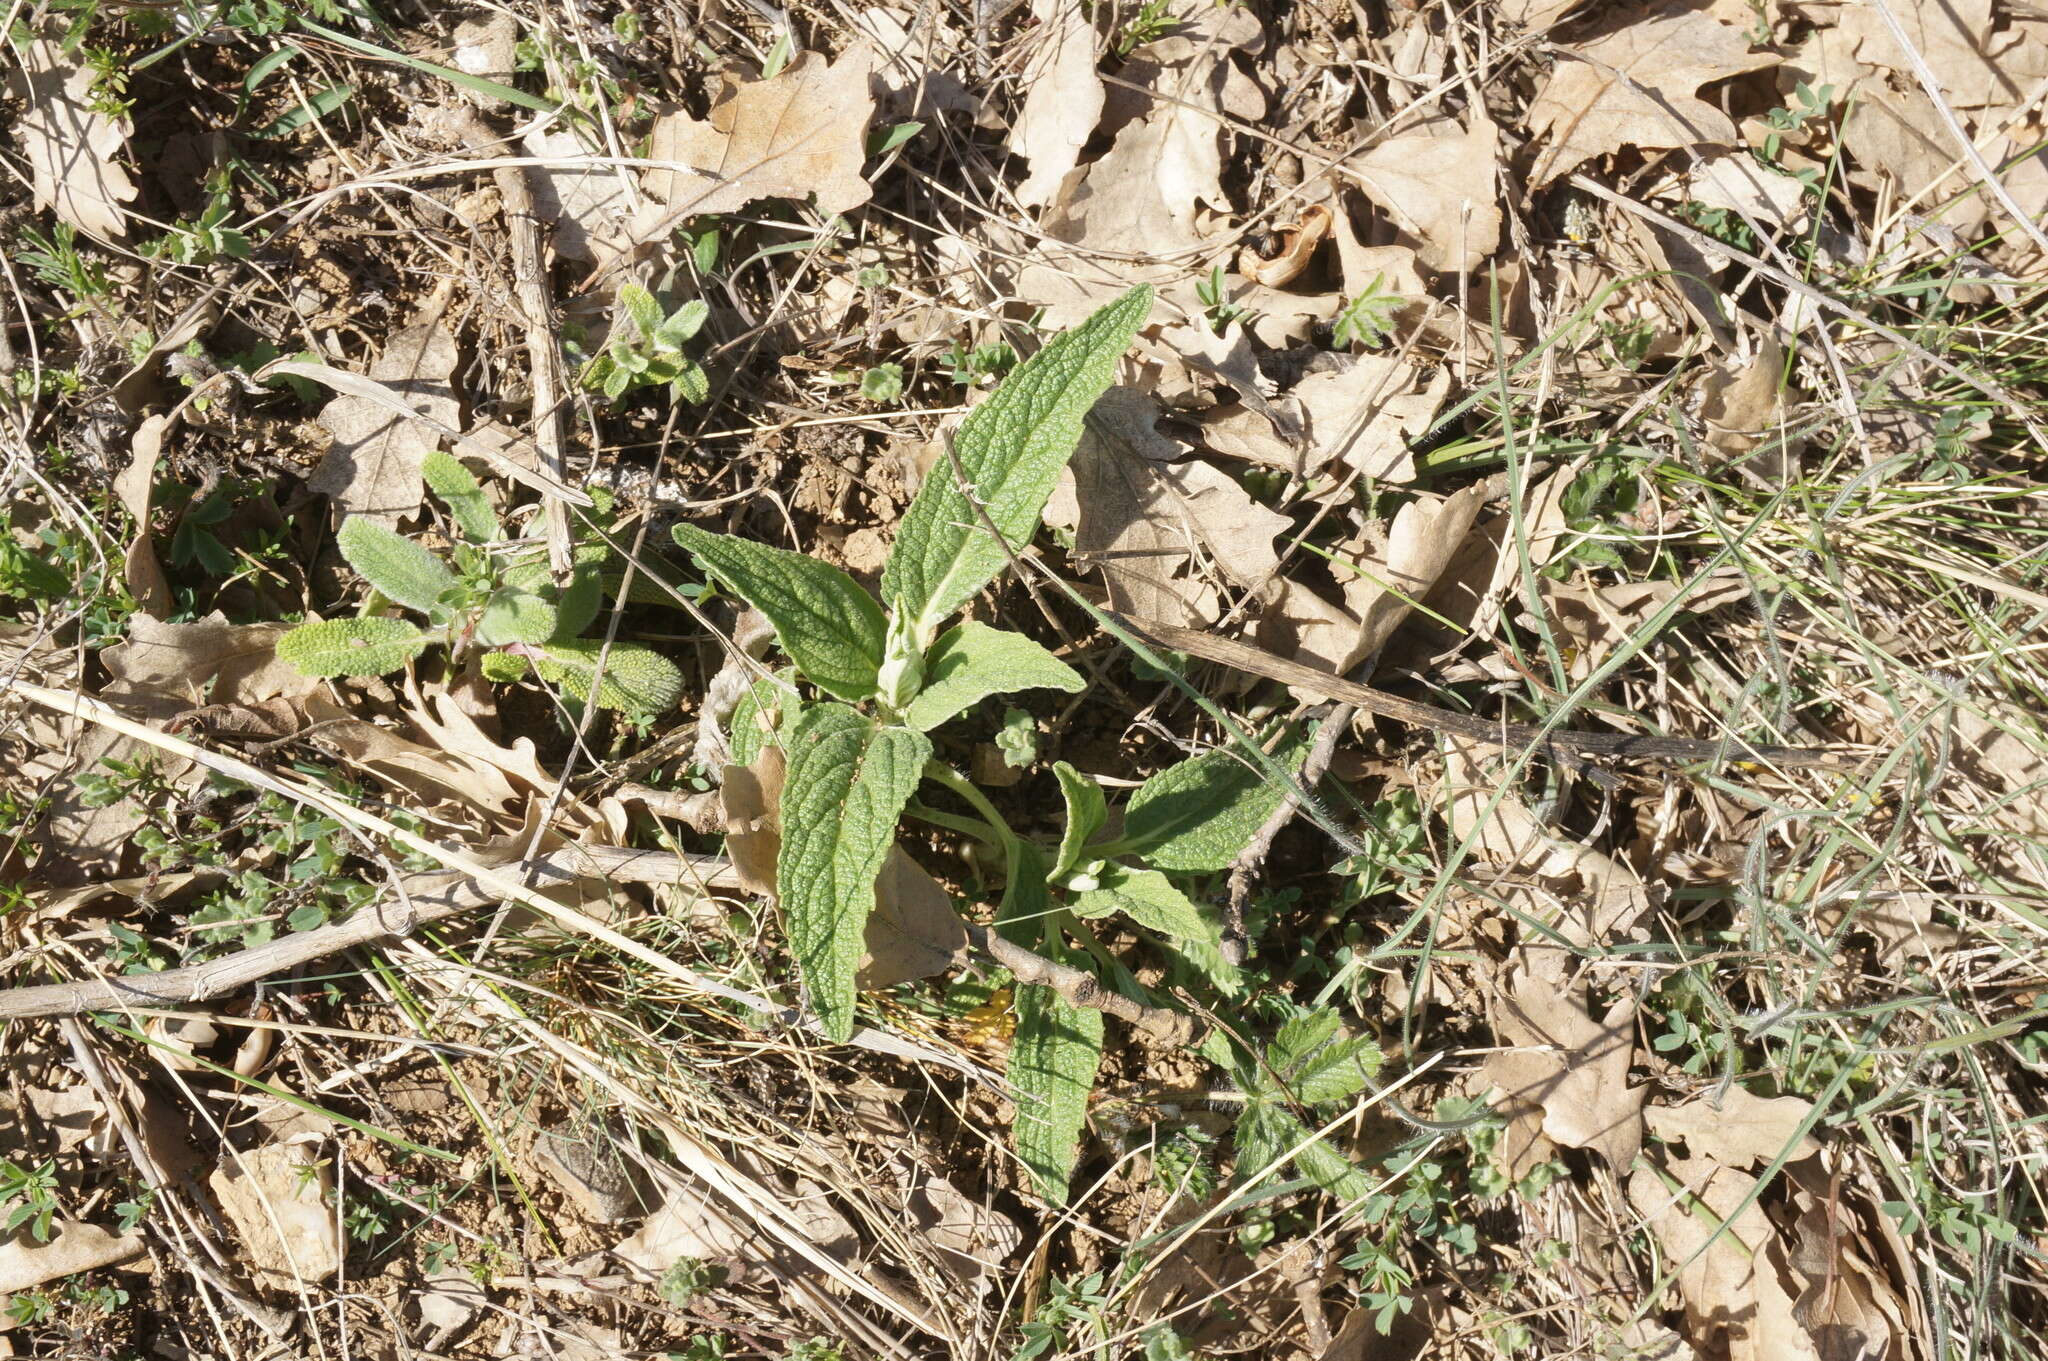 Image of Phlomis herba-venti subsp. pungens (Willd.) Maire ex De Filipps